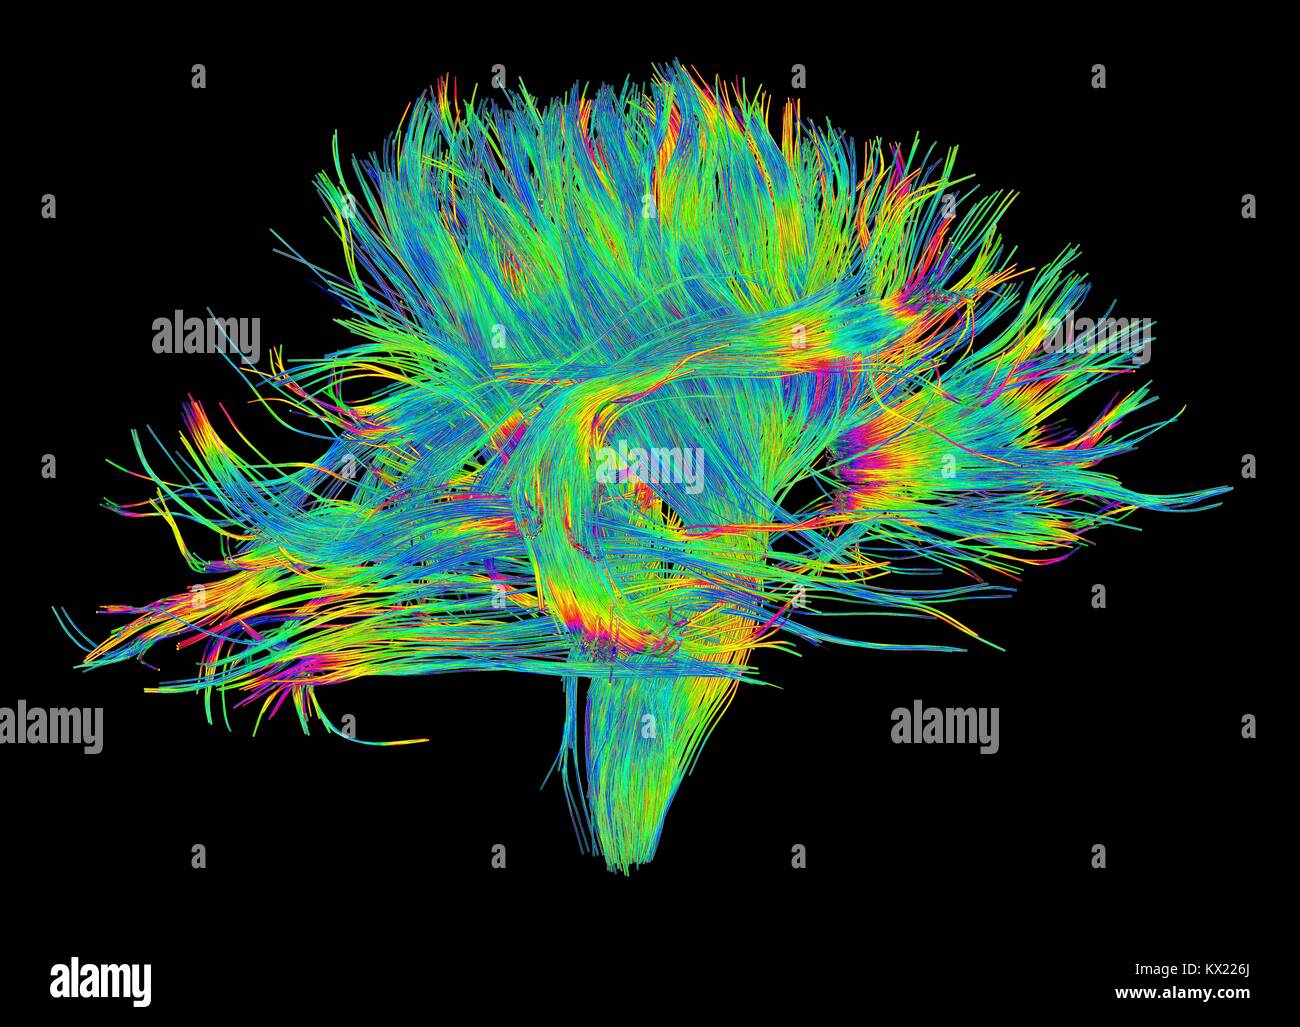 La sostanza bianca fibre. Computer 3D avanzato di diffusione di imaging spettrale (DSI) scansione dei fasci di sostanza bianca in fibre di nervo nel cervello. Le fibre di trasmettere segnali nervosi tra le regioni del cervello e tra il cervello e il midollo spinale. Spettro di diffusione di imaging (DSI) è una variante della formazione di immagini a risonanza magnetica (MRI) in cui un campo magnetico mappe l'acqua contenuta nel neurone le fibre e quindi la loro mappatura incrociando i modelli. Una simile tecnica denominata imaging del tensore di diffusione (DTI) è utilizzato anche per esplorare i dati neurali della materia bianca fibre nel cervello. Entrambi i metodi consentono la mappatura di loro Foto Stock